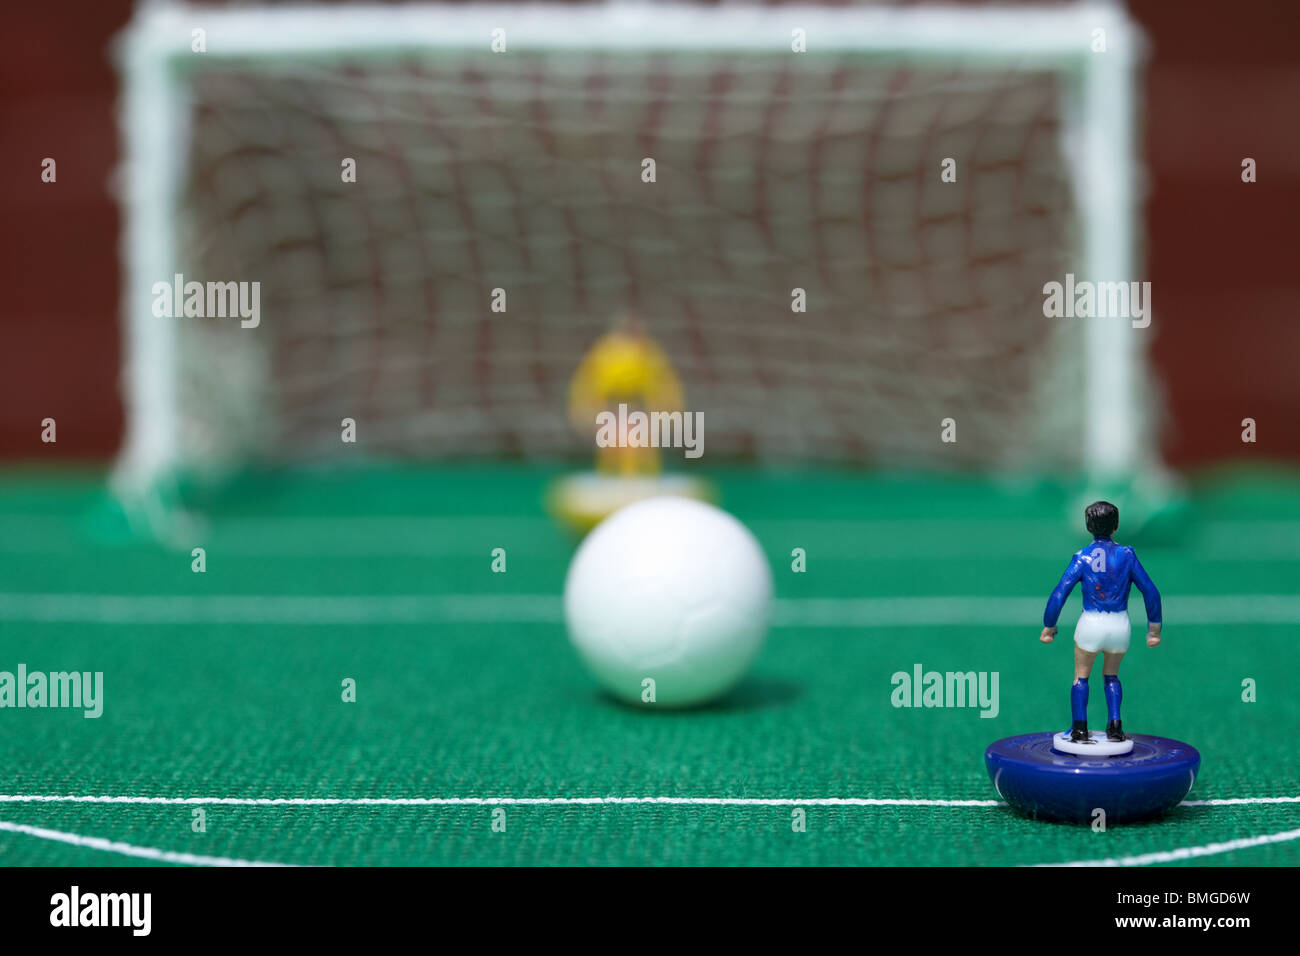 Penalty Kick Fußball Fußball-Szene Reinacted mit Subbuteo-Table-Top-Football-Spieler-Spiel  Stockfotografie - Alamy